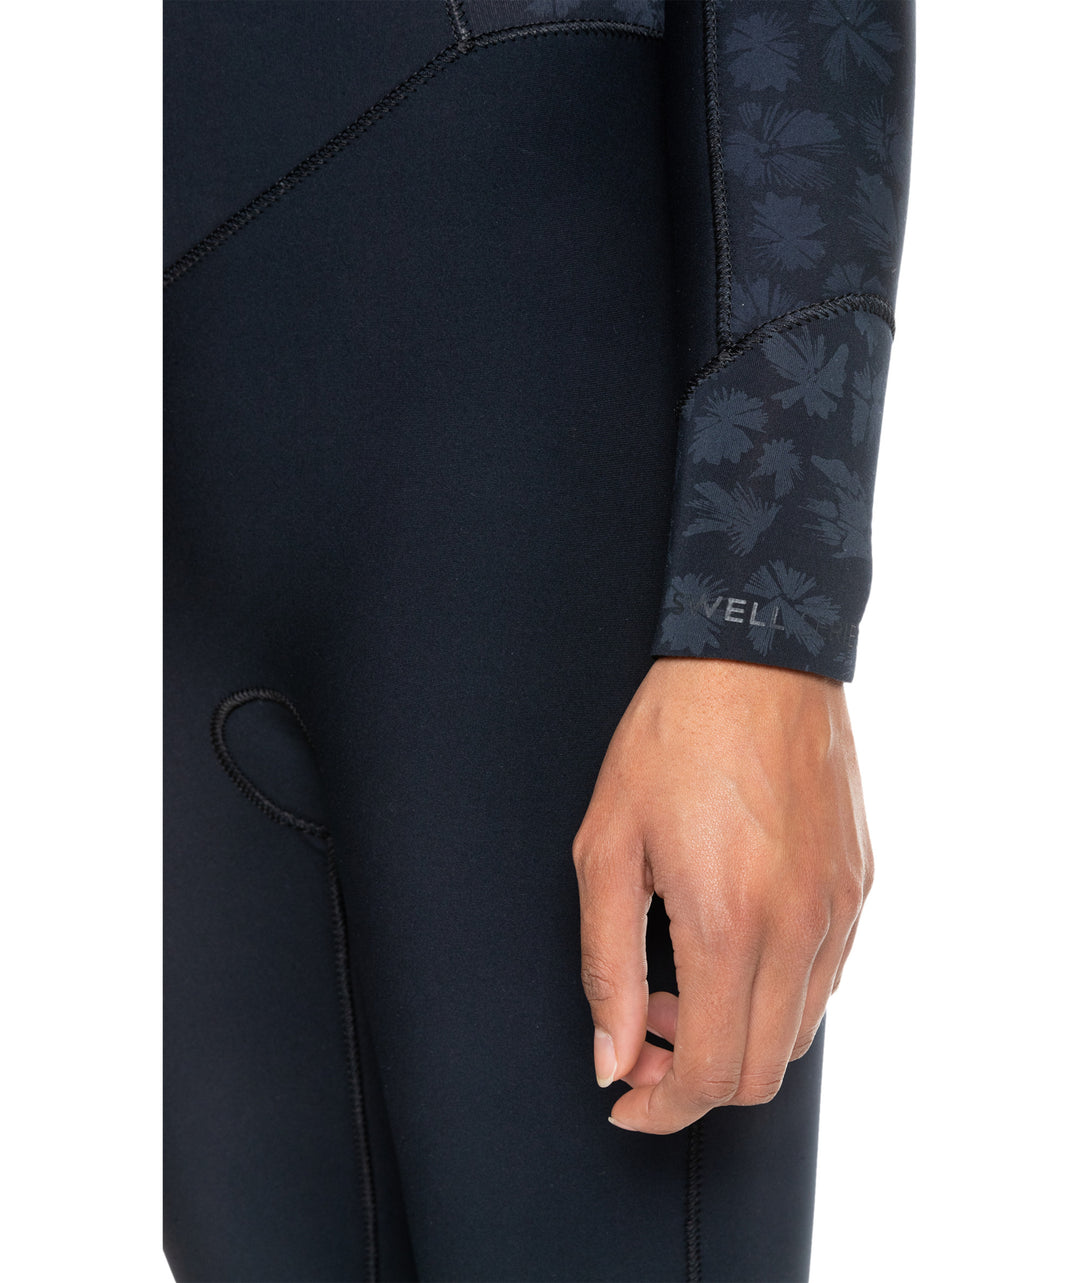 Swell Series 4/3 Back Zip GBS Steamer Wetsuit - Black